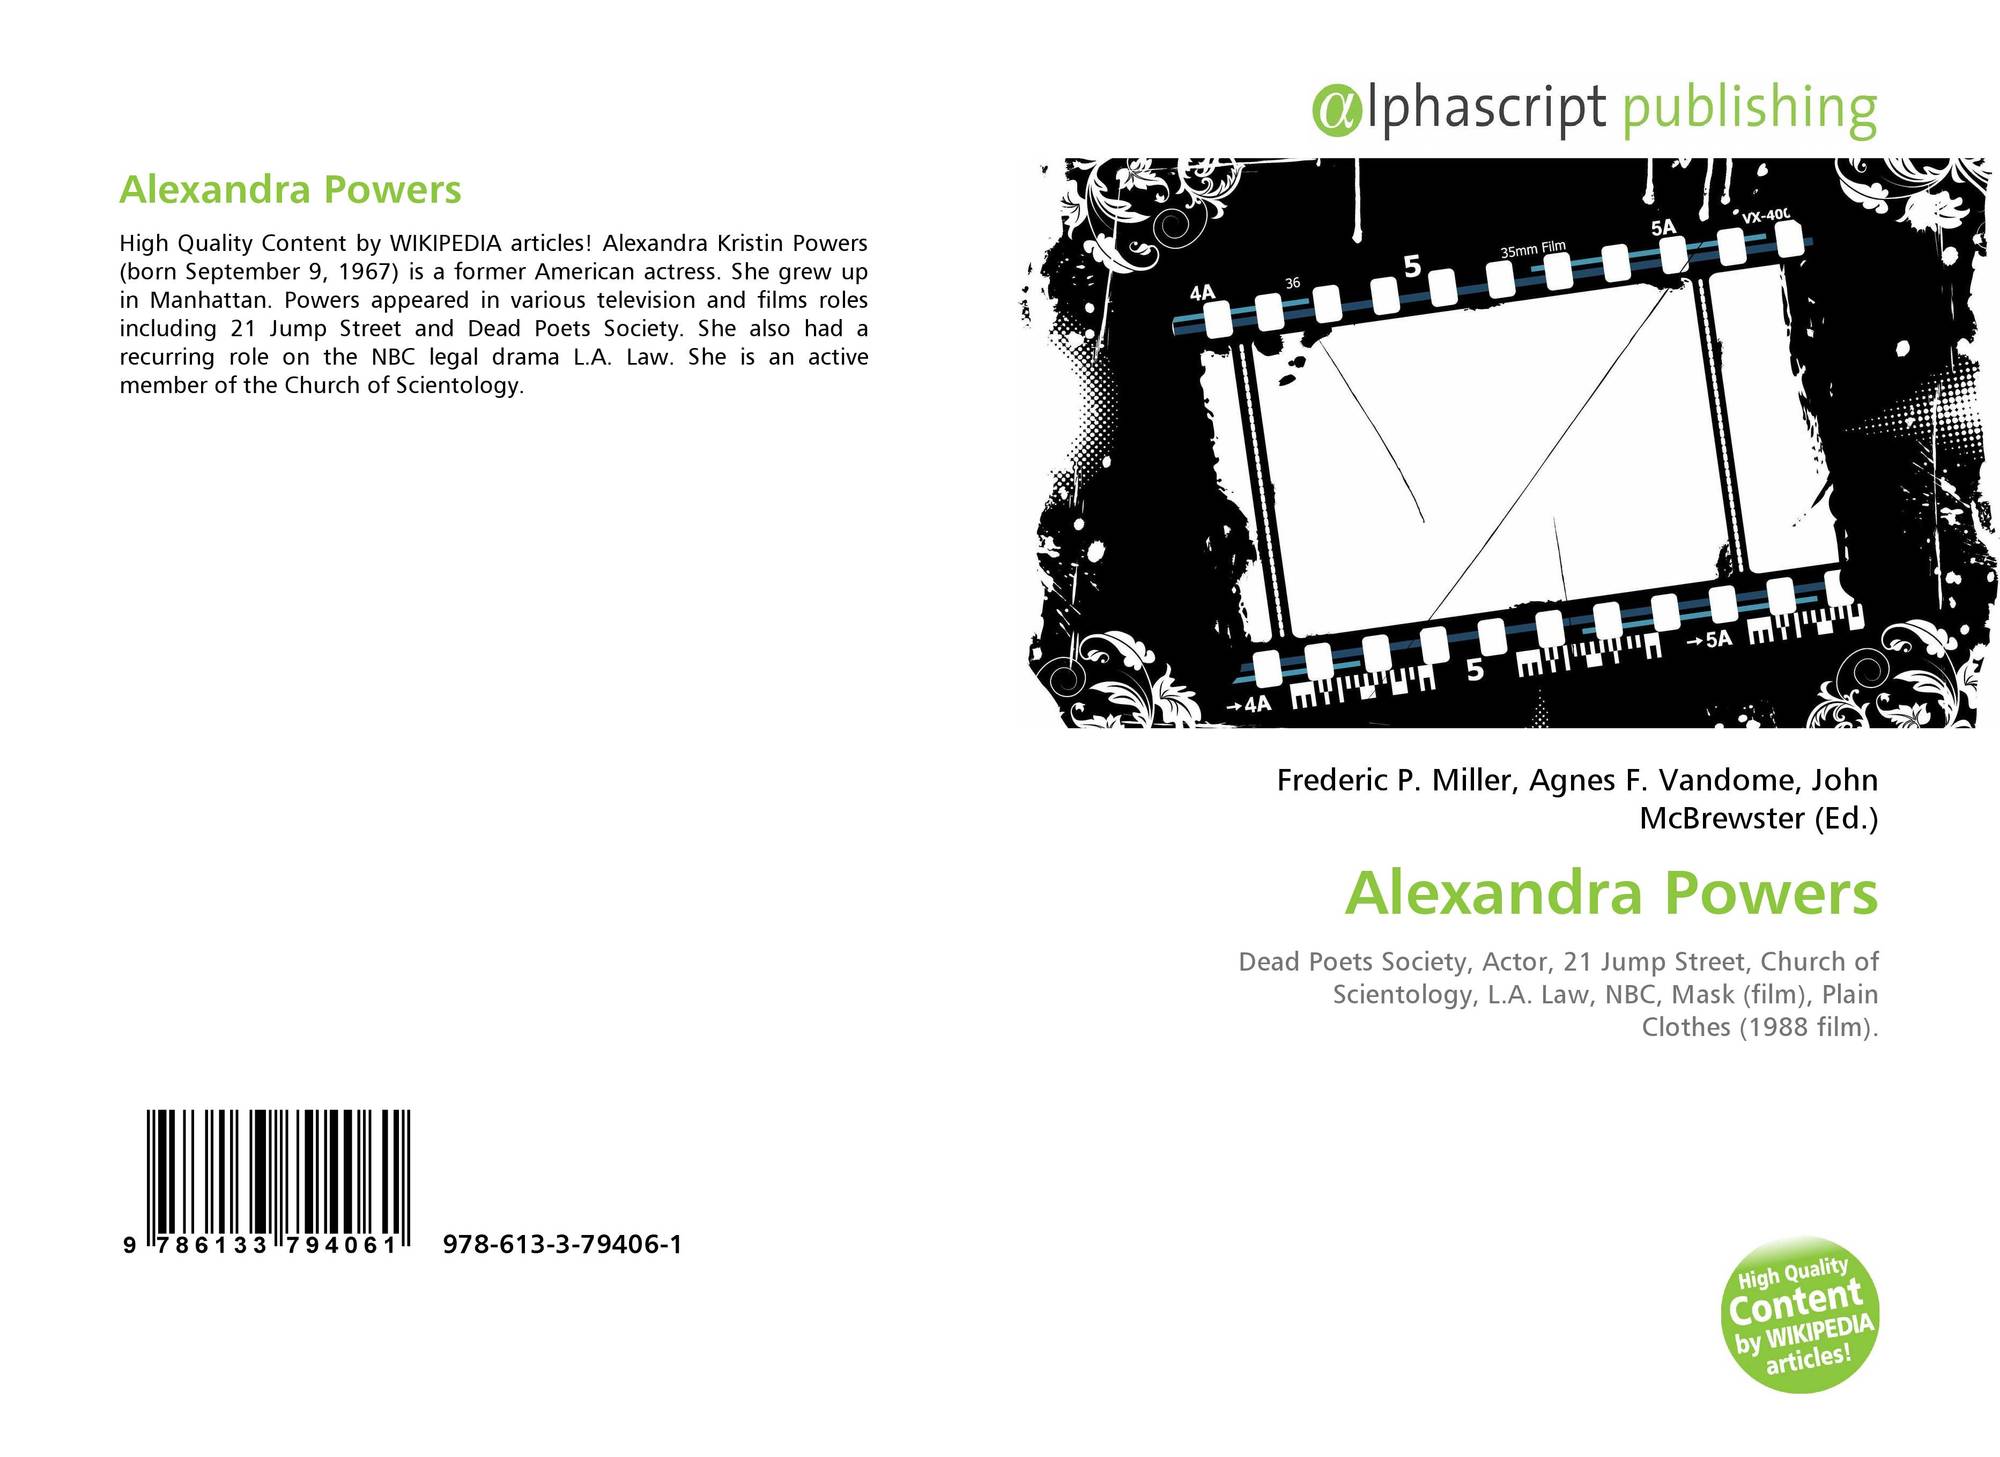 Alexandra powers actress